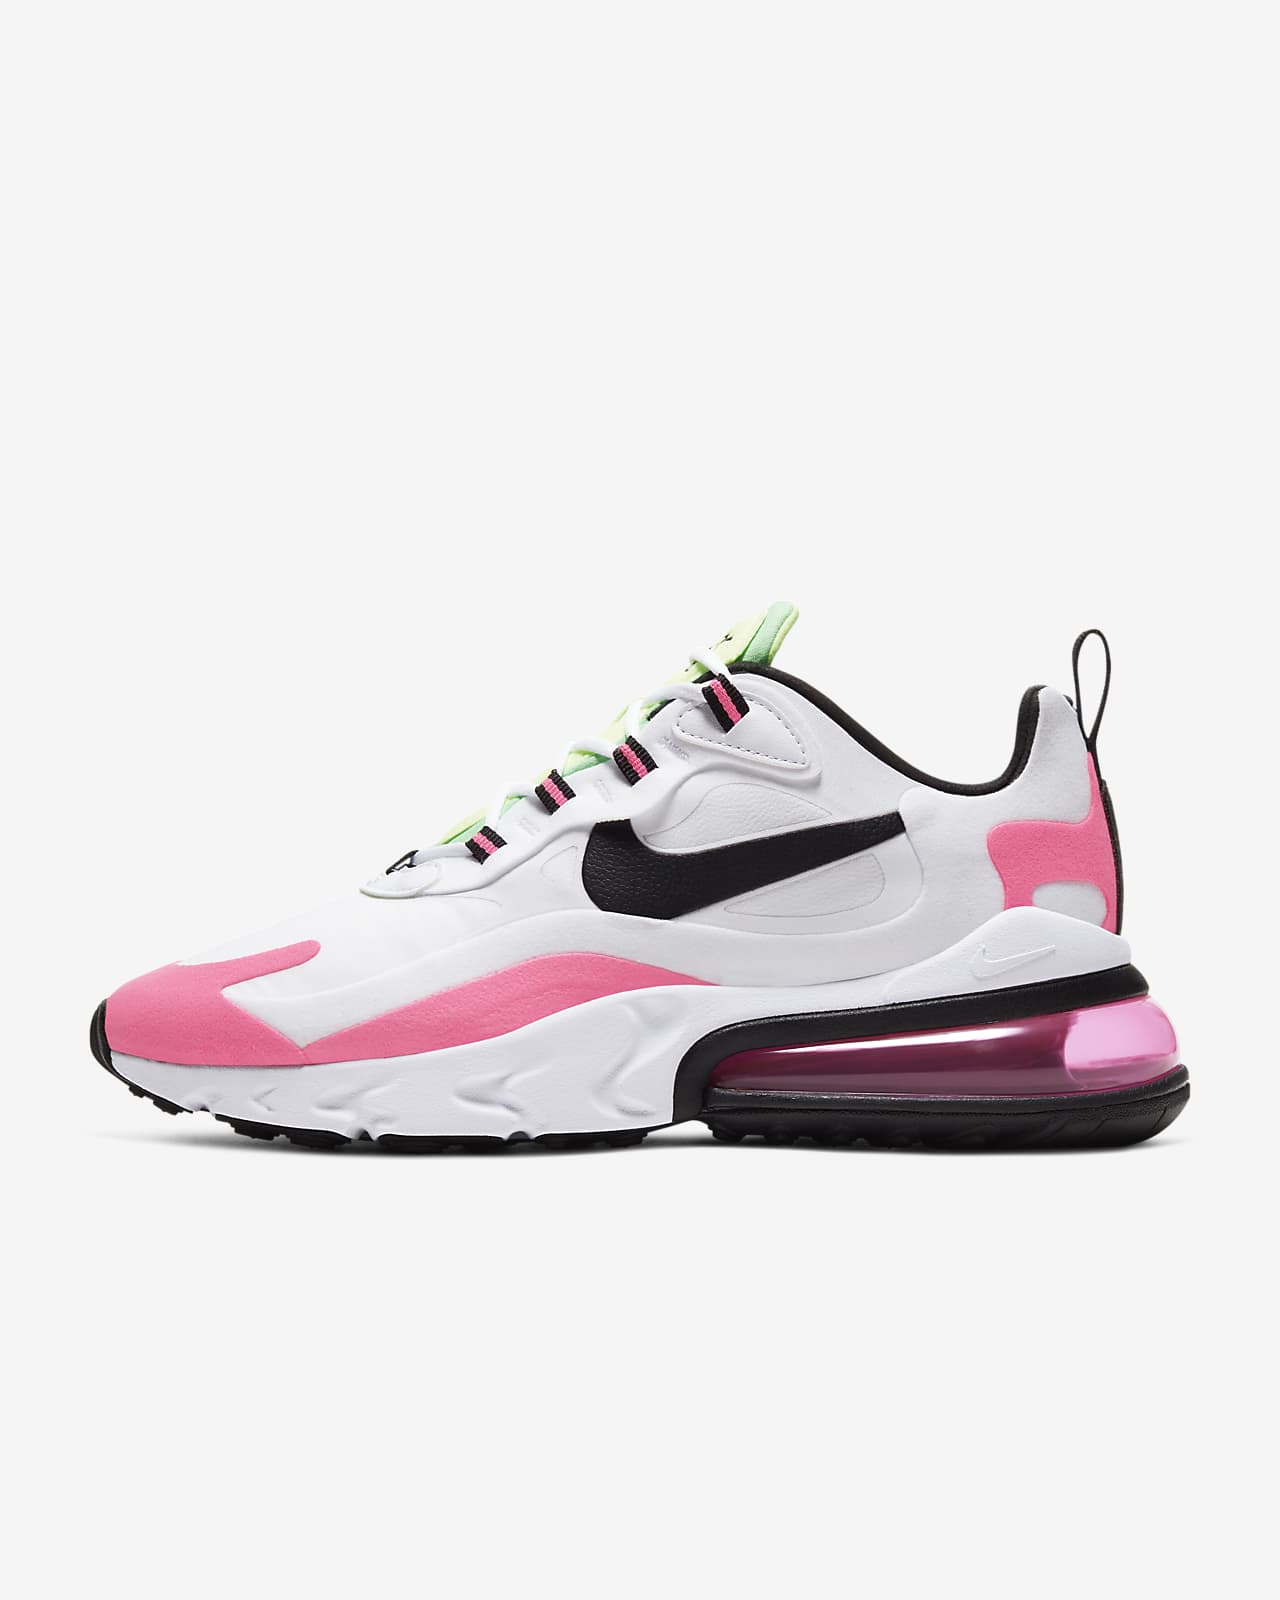 nike womens sneakers pink